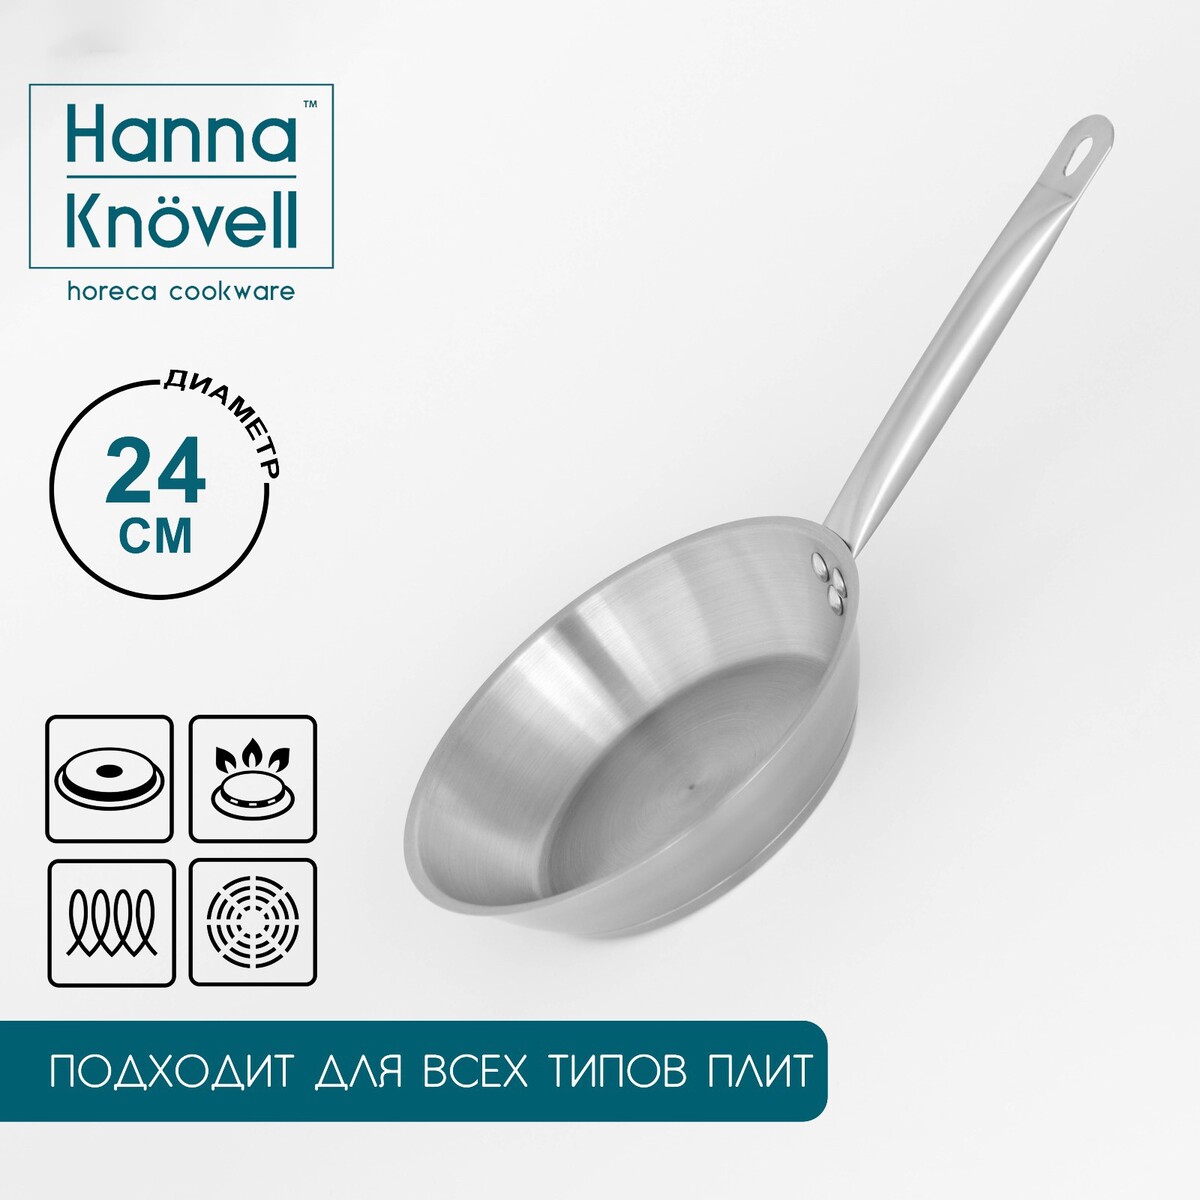 Сковорода из нержавеющей стали hanna knövell, d=24 см, h=5 см, толщина стенки 0,6 мм, длина ручки 21,5 см, индукция